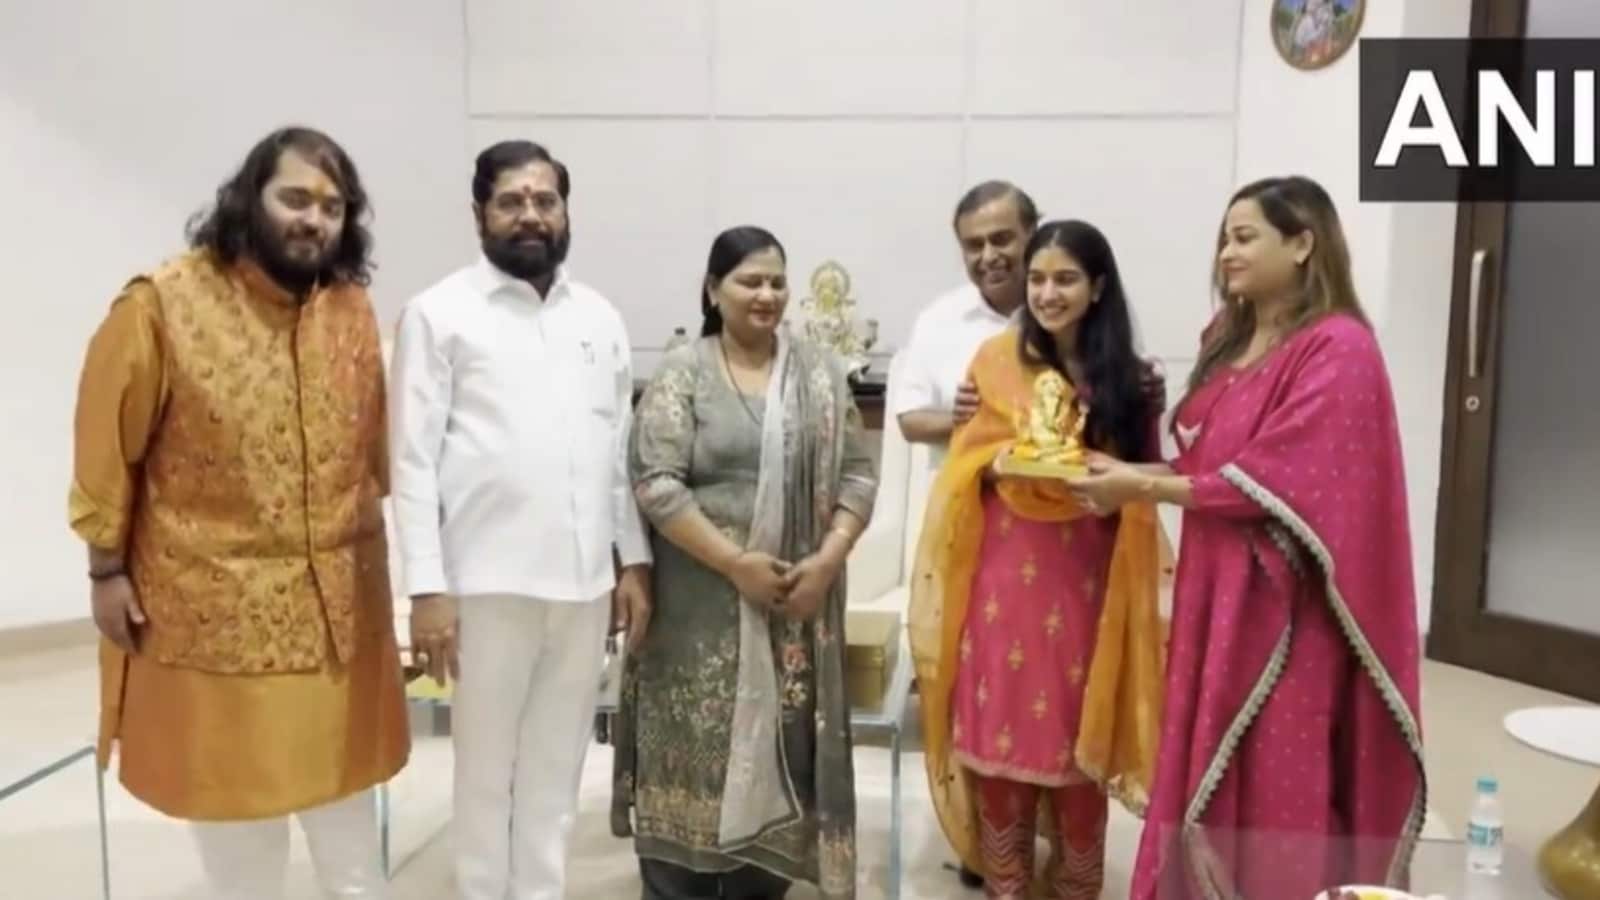 Mukesh Ambani, Anant Ambani, Radhika Merchant invite Maharashtra CM Eknath Shinde for wedding. Watch